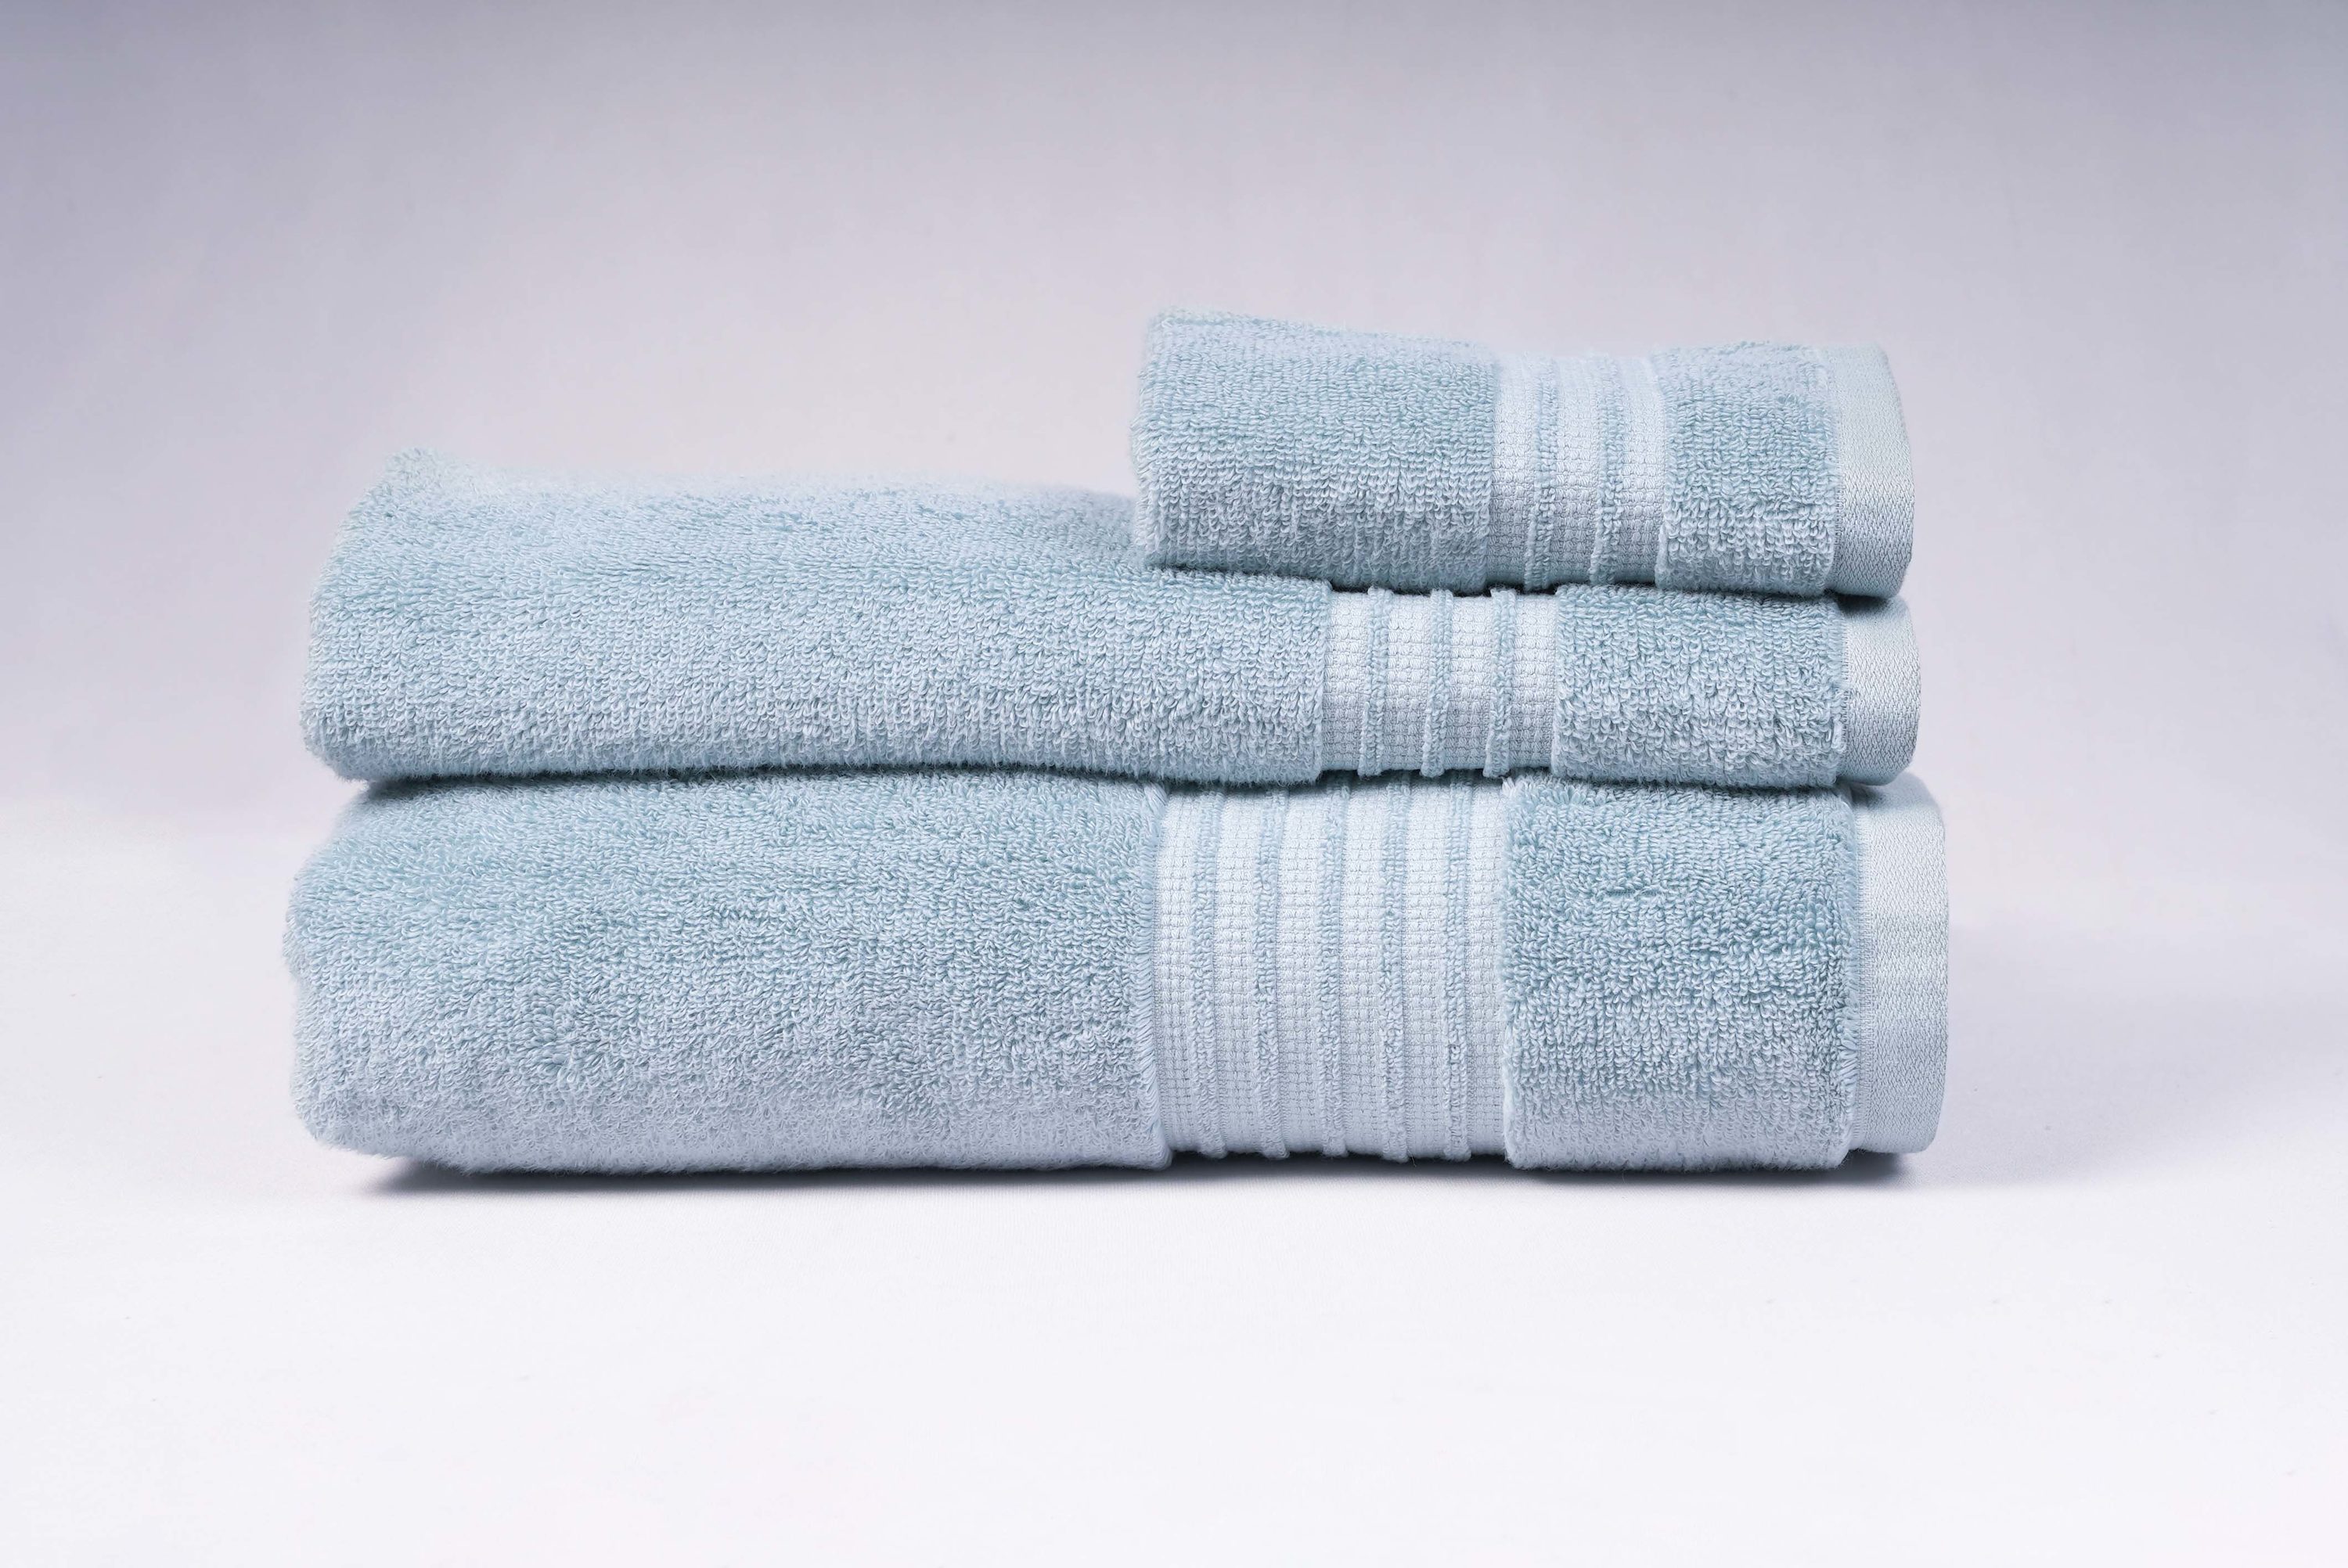 Allen + Roth Cotton Bath Towel Set - White - 4 Pieces